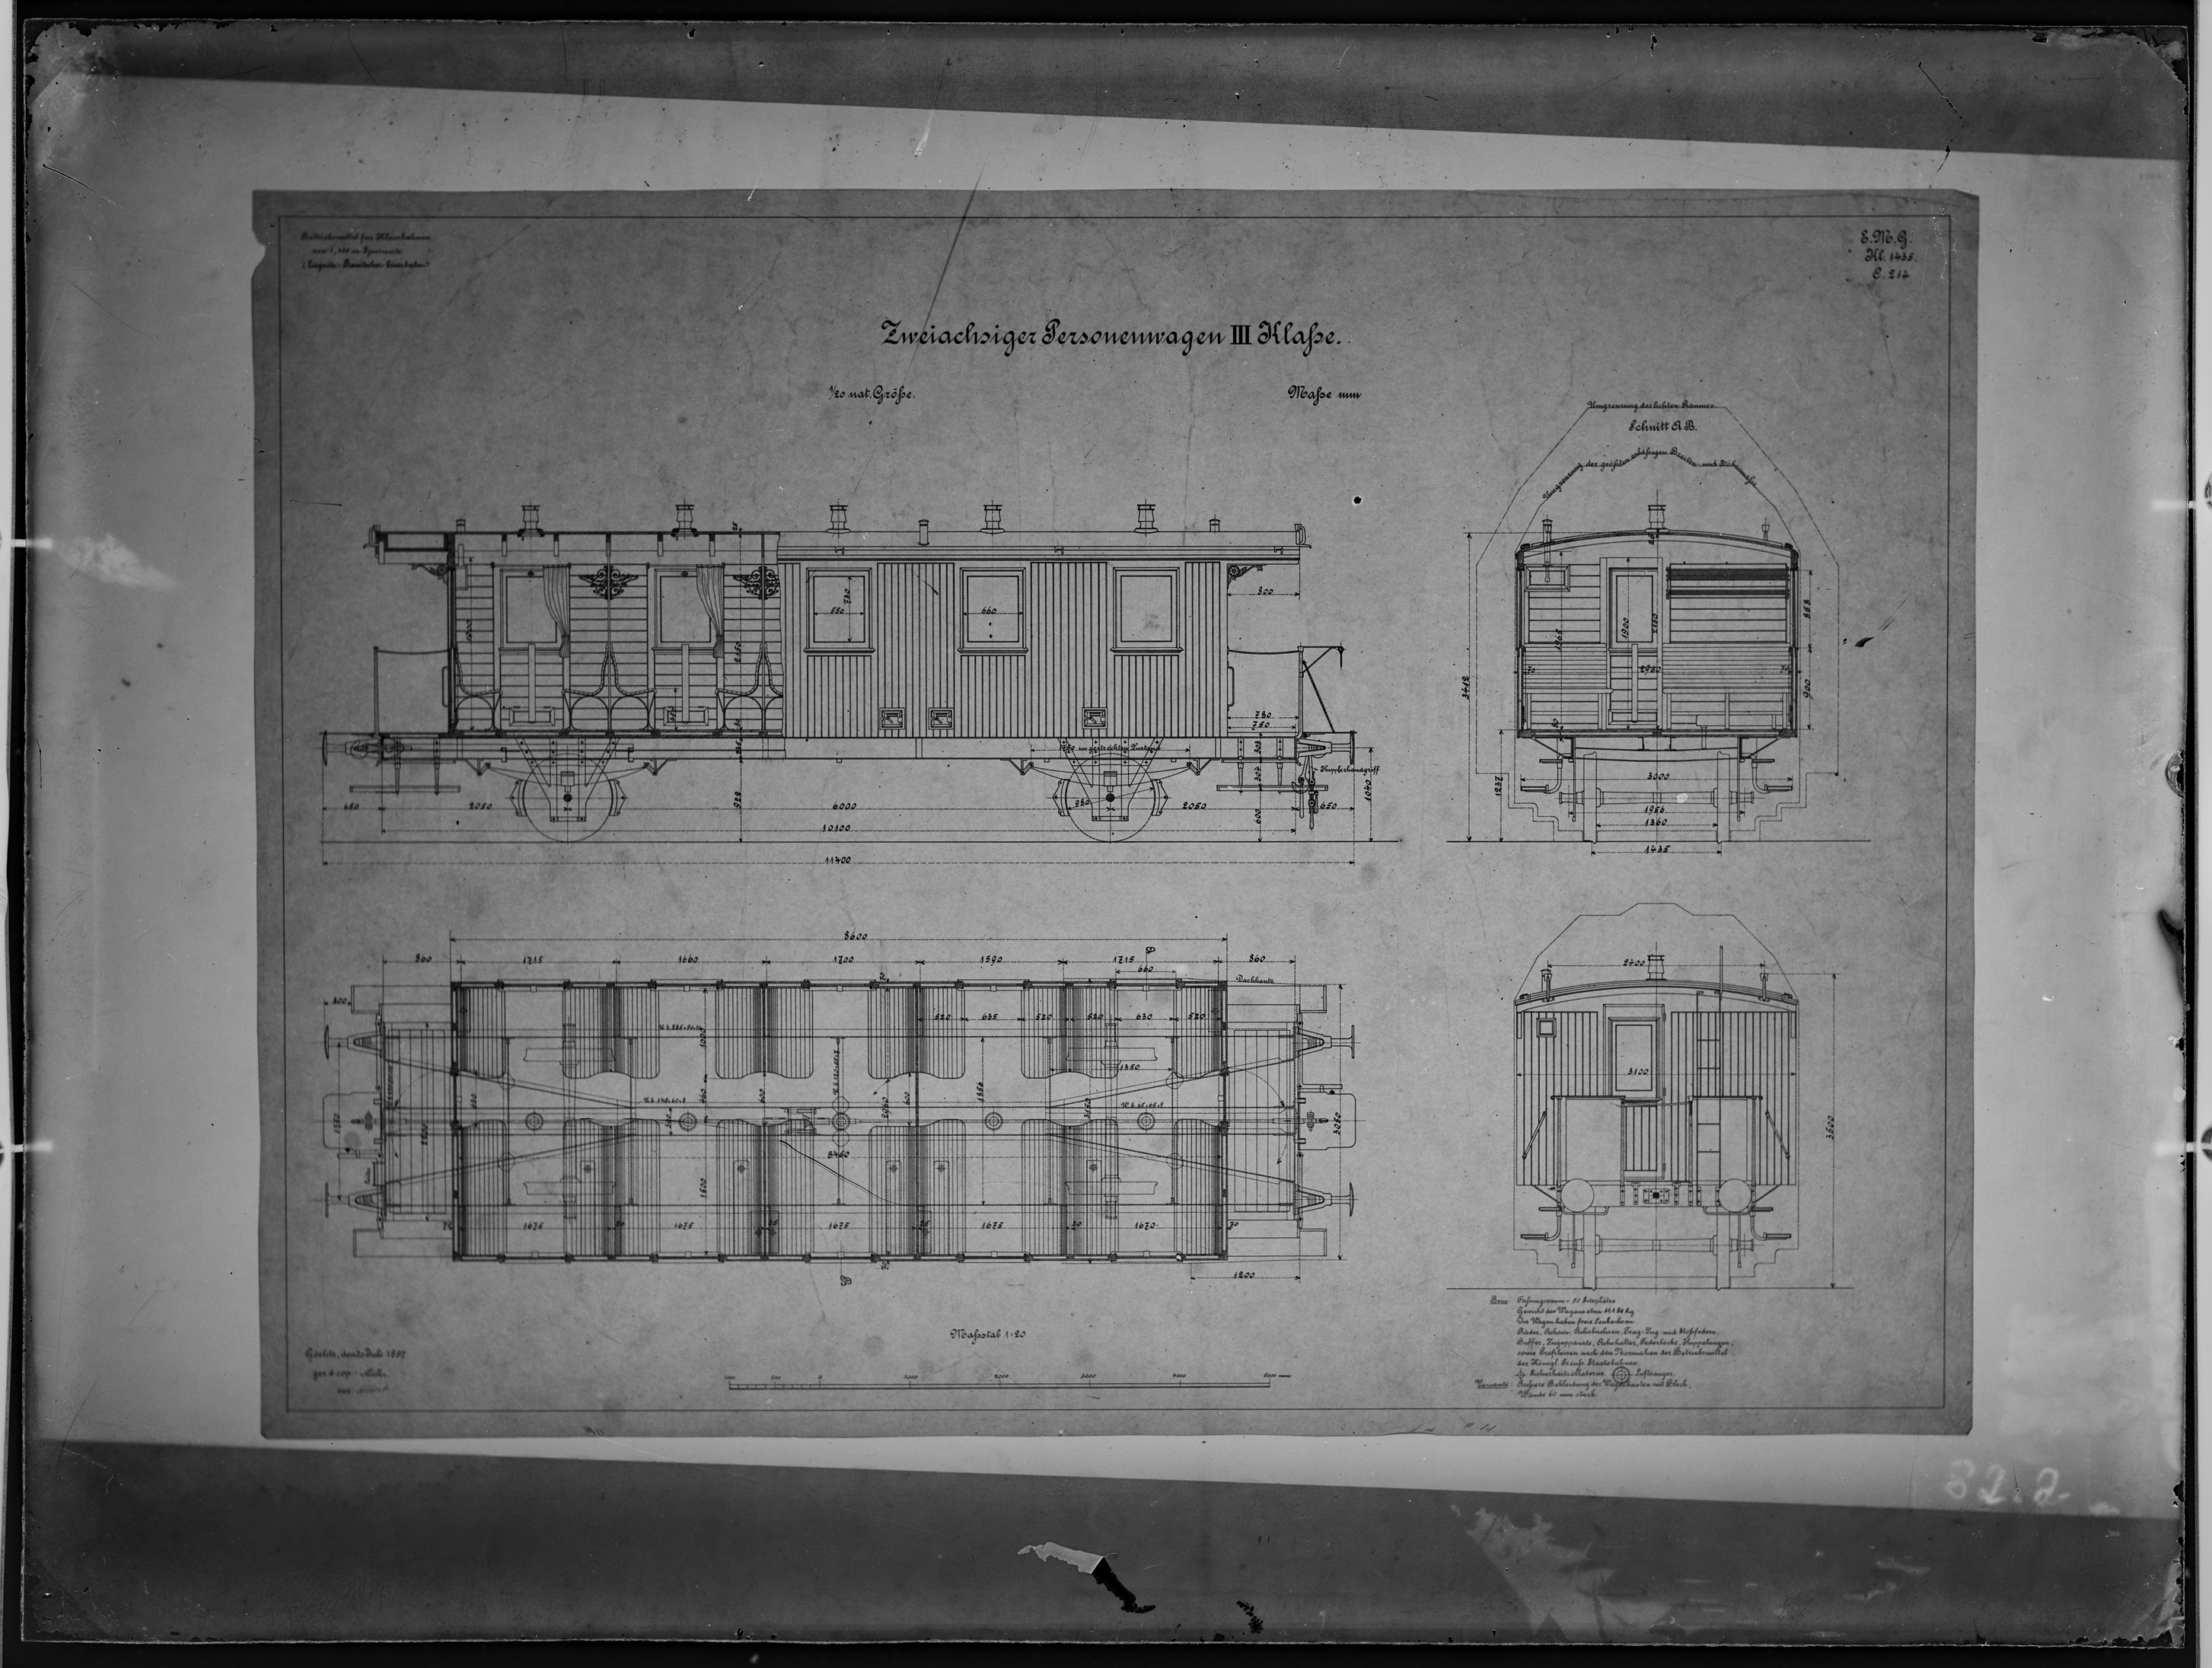 Fotografie: Maßzeichnung eines zweiachsigen Personenwagens dritter Klasse (Spurweite: 1435 mm), Maßstab 1:20, 1899. Liegnitz-Rawitscher Eisenbahn-Gese (Verkehrsmuseum Dresden CC BY-NC-SA)